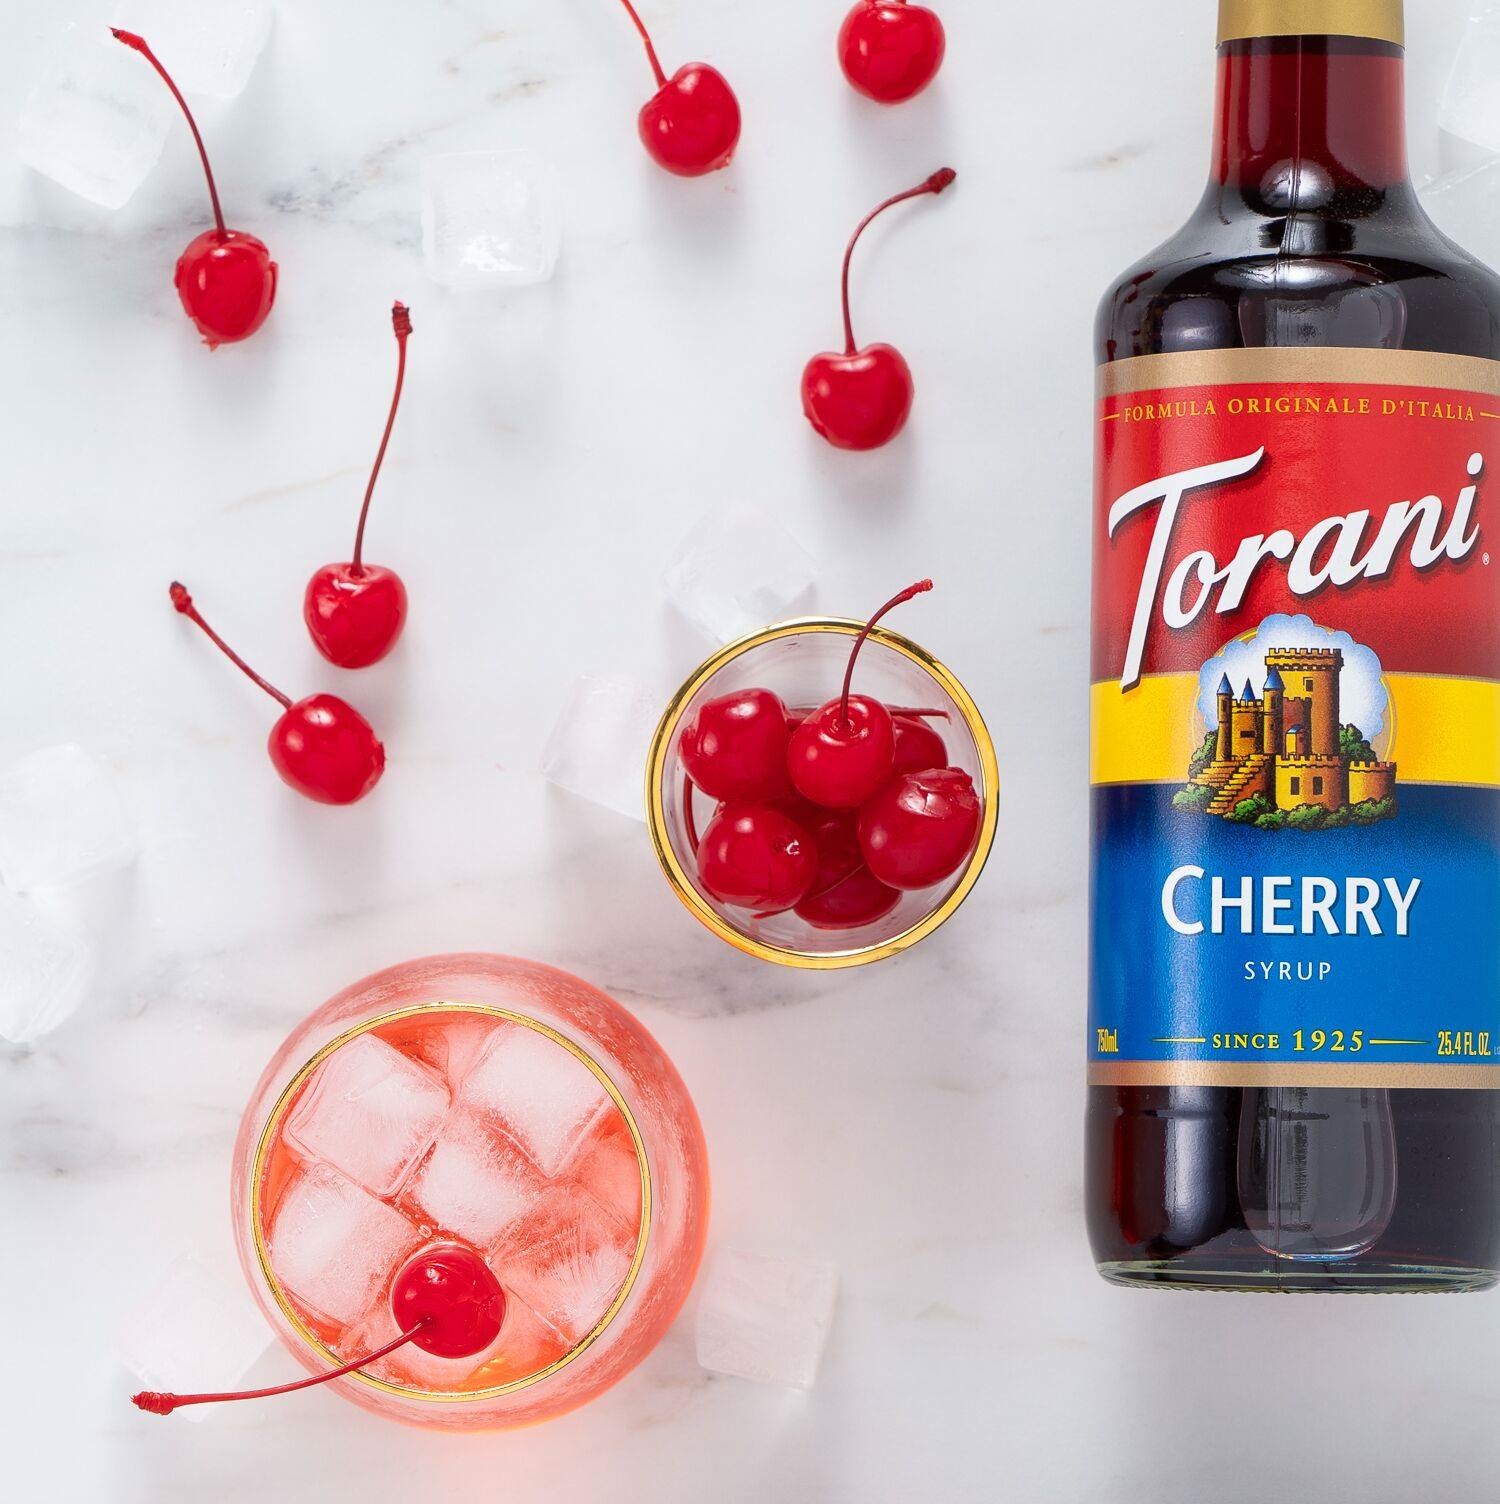 Siro Pha Chế Vị Anh Đào Torani Classic Cherry Syrup 750ml Mỹ - Phù Hợp Cho Trà Trái Cây Hoặc Soda